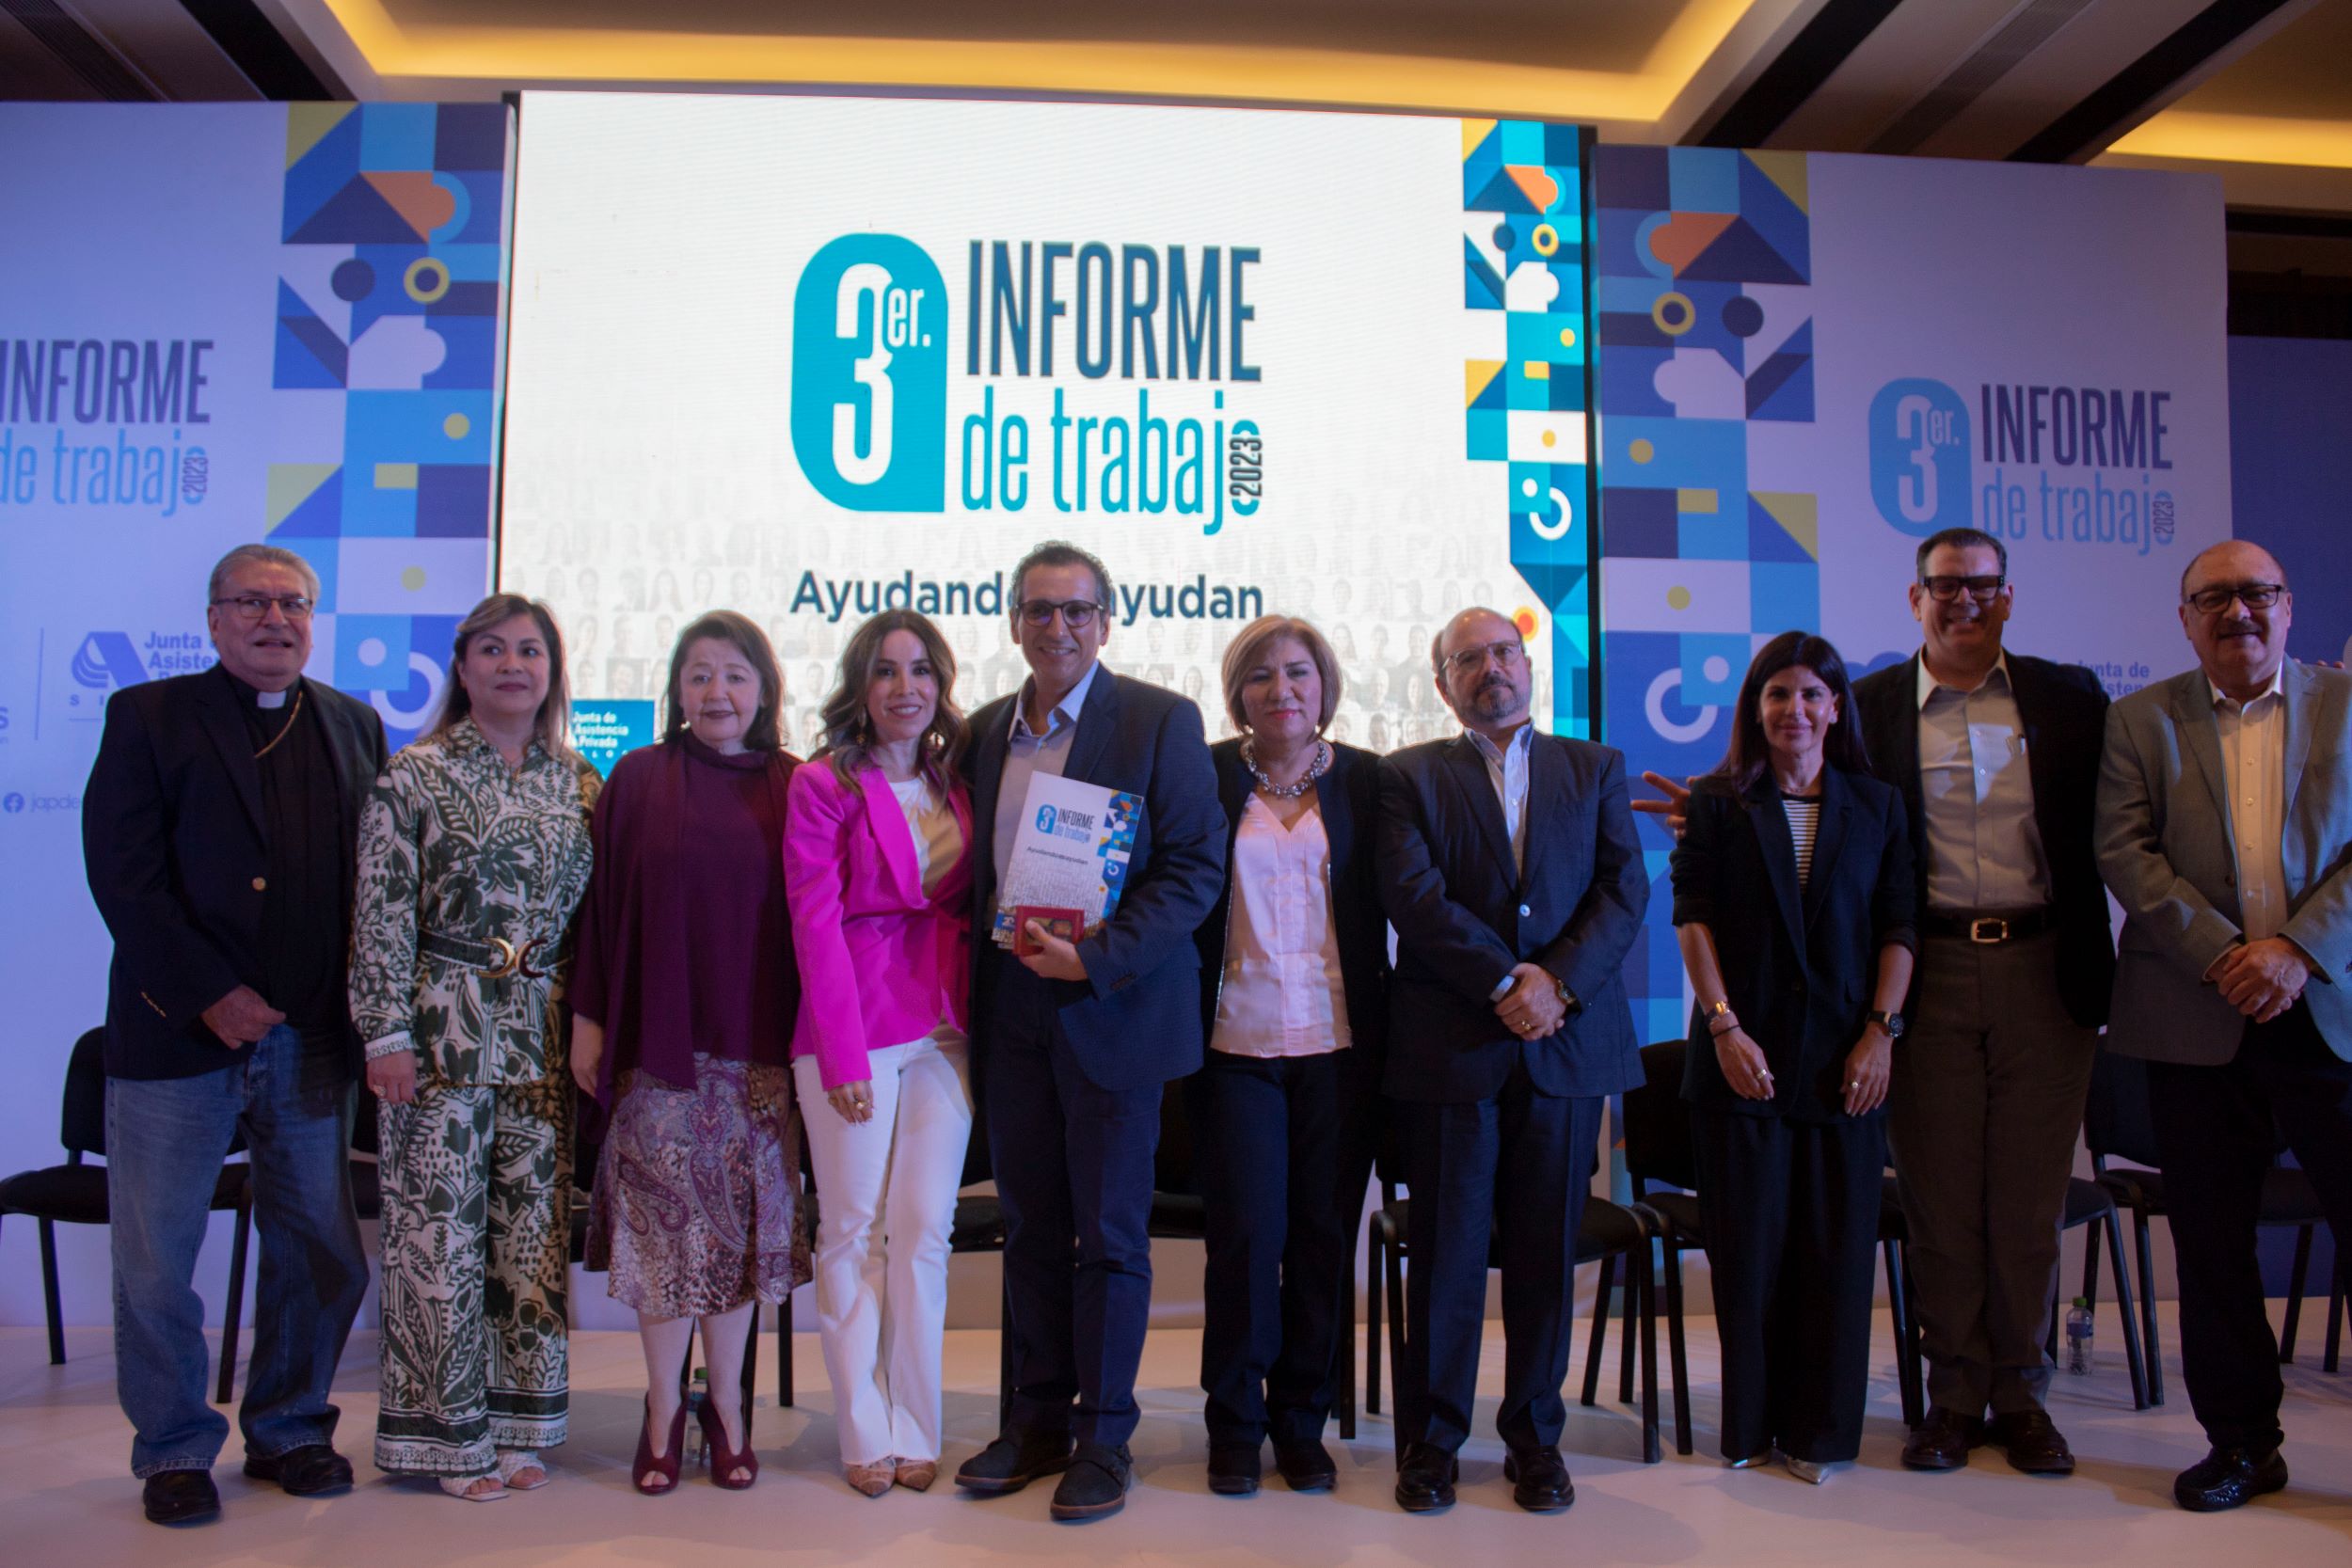 Tercer Informe de Trabajo de la JAP Sinaloa, una celebración de resultados de la generosidad